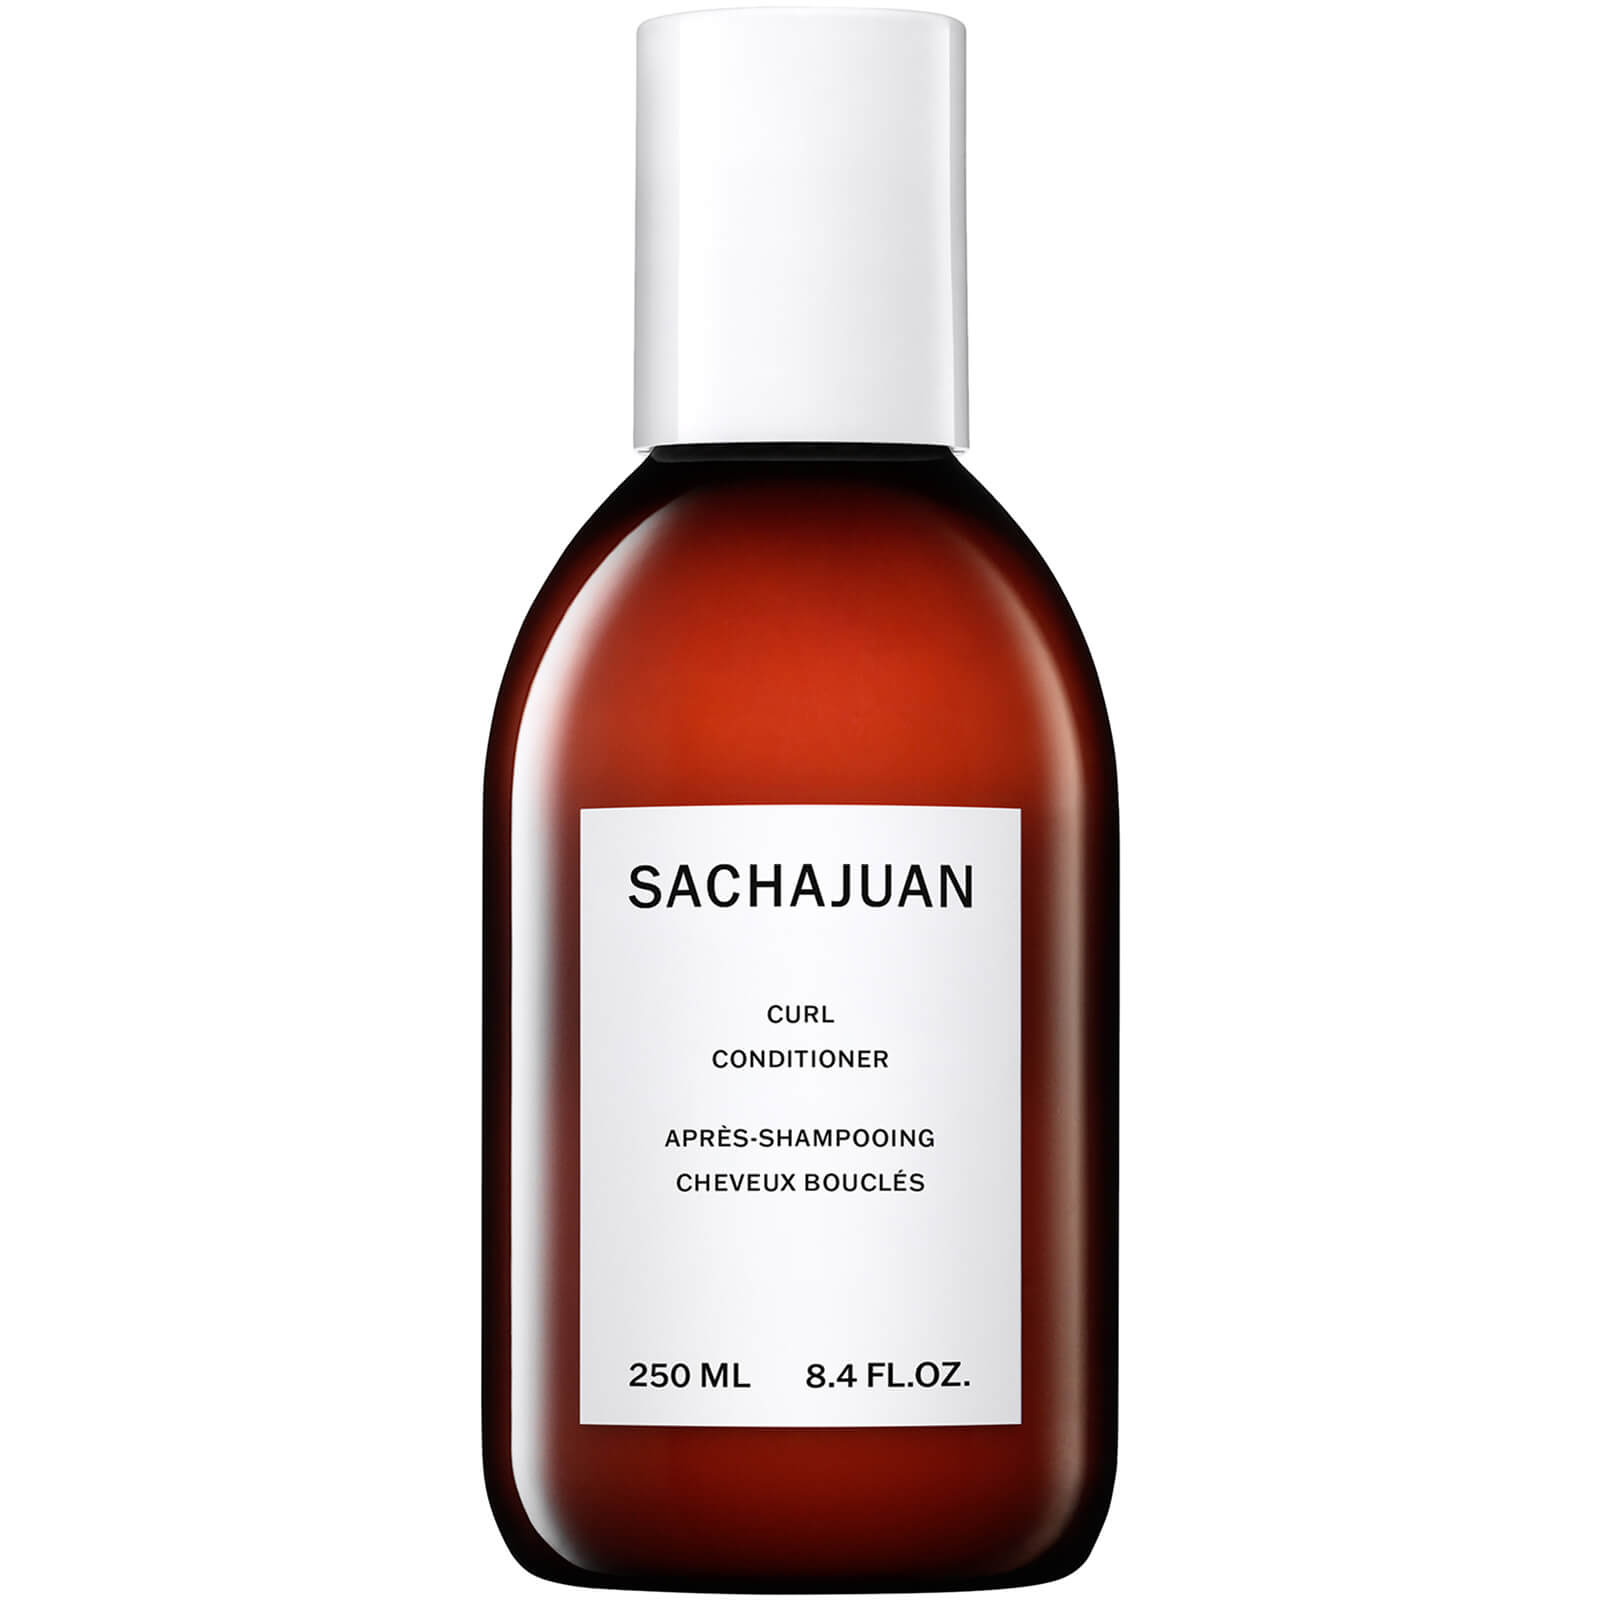 Sachajuan Curl Conditioner 250ml product